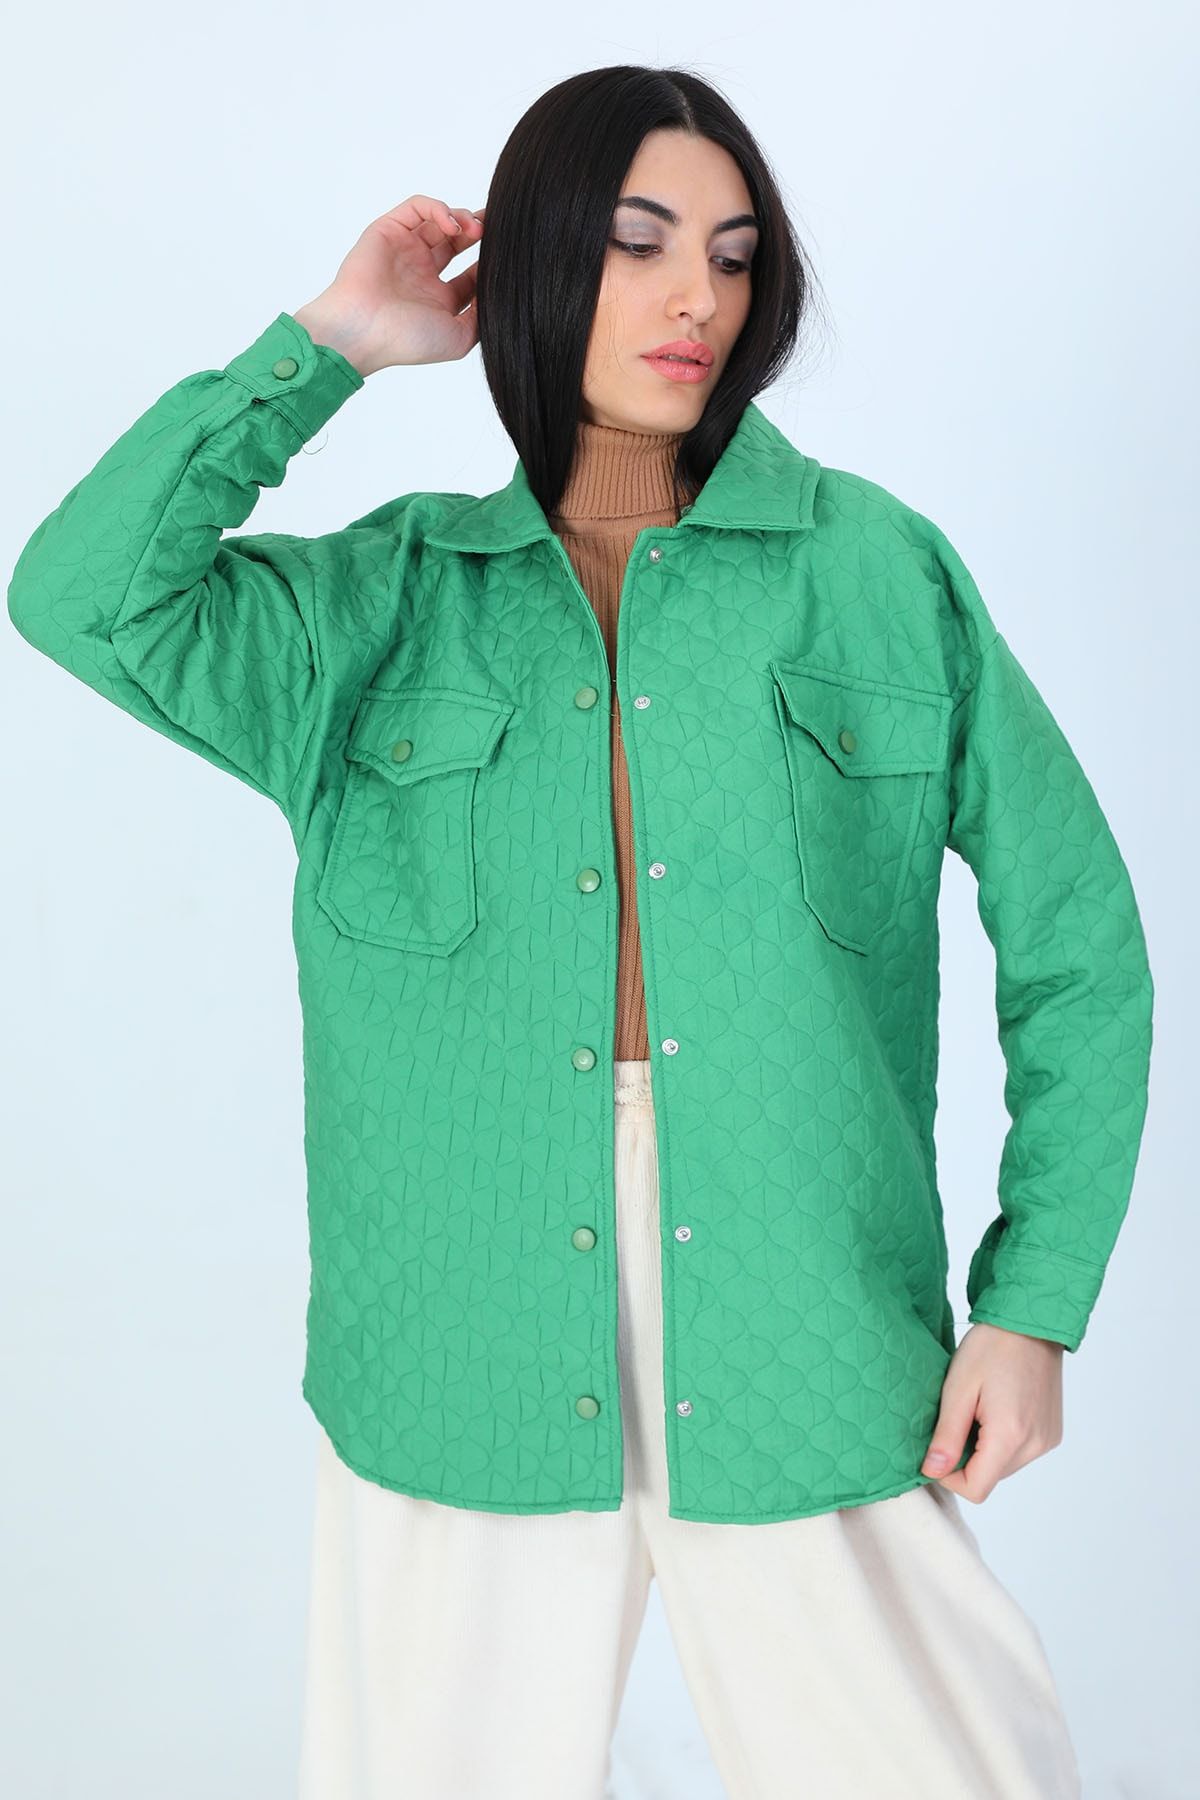 Julude Yeşil Kadın Kapitoneli Çıtçıtlı Ceket